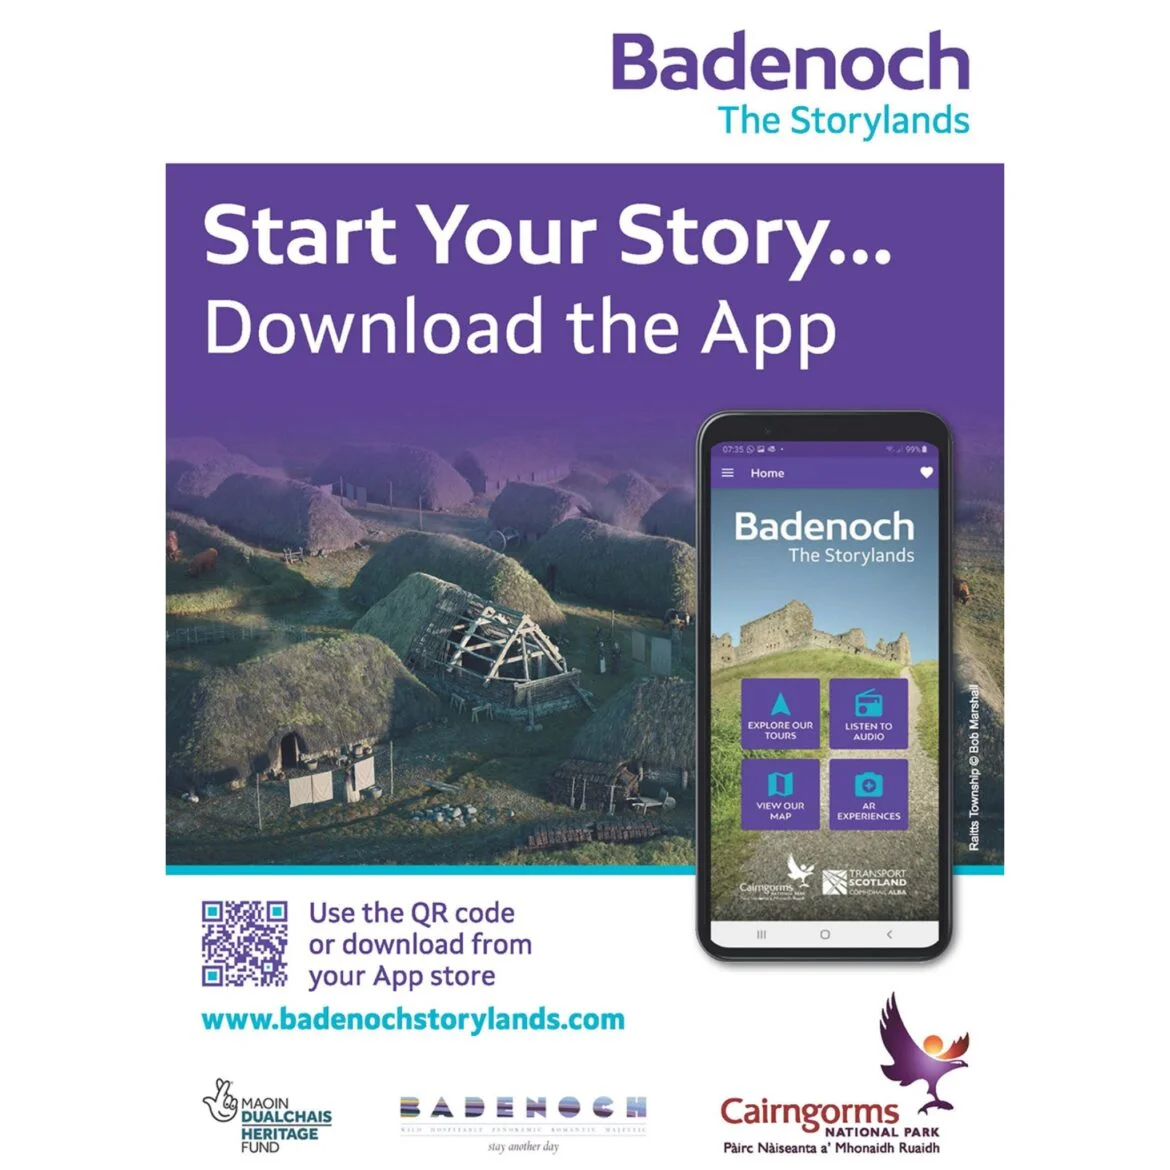 Badenoch the Storylands App